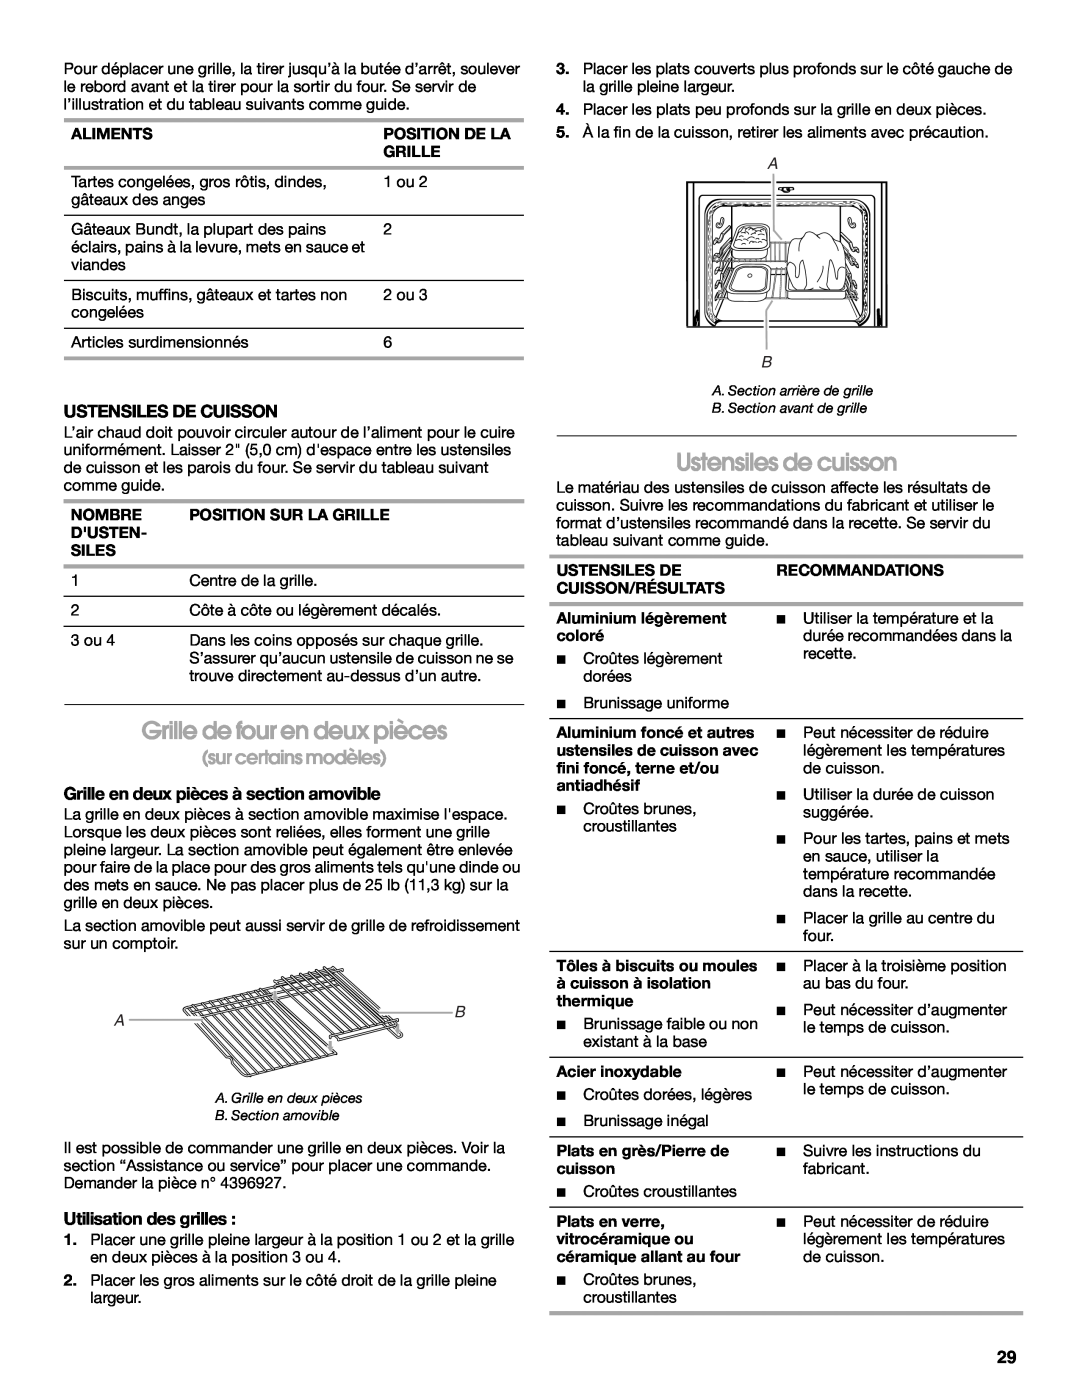 IKEA Range manual Grille de four en deux pièces, Ustensiles de cuisson, sur certains modèles, Ustensiles De Cuisson, A B 